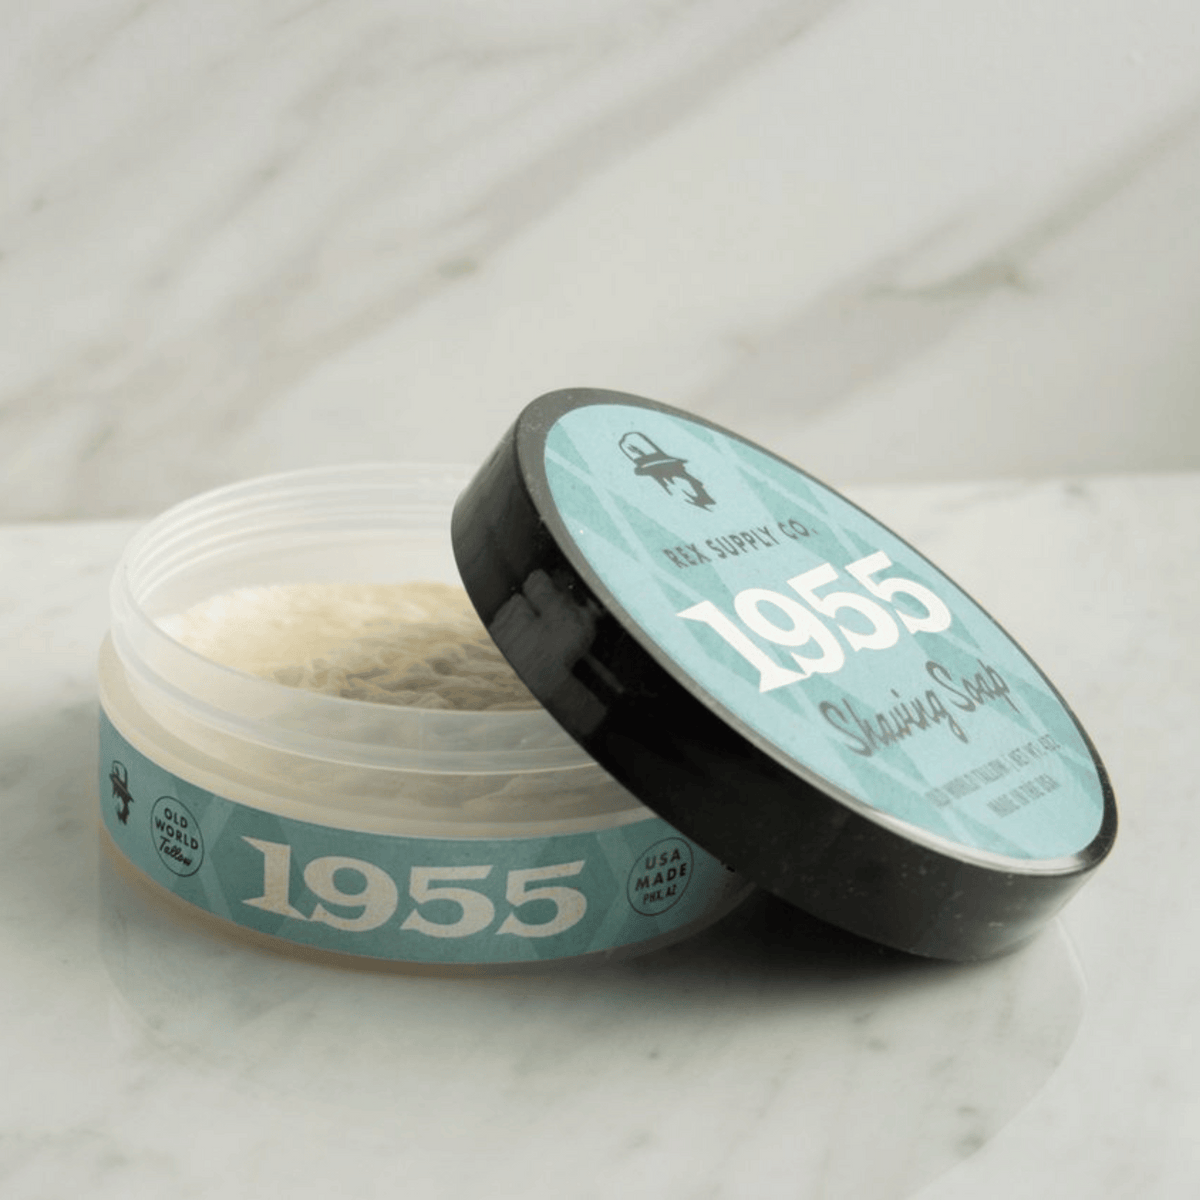 Alternate Image of Shaving Soap - 1955